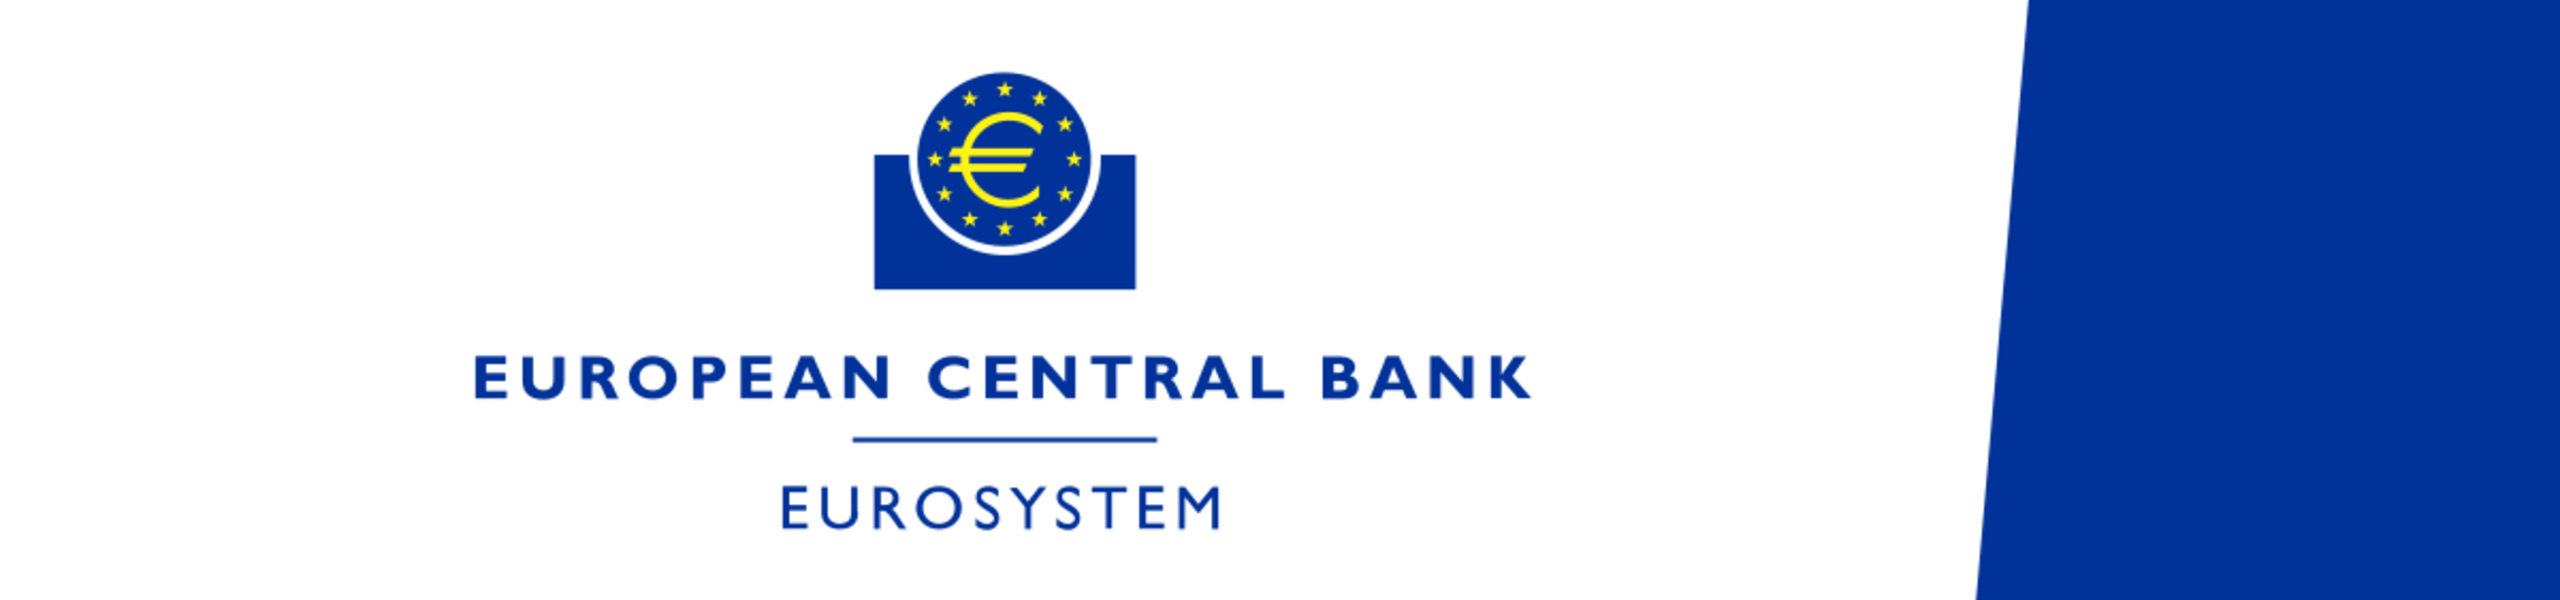 ECB Monetary Policy Meeting Accounts ของยูโรโซนในวันนี้ที่เป็นการตีพิมพ์การรายงานการประชุมของธนาคารกลางยุโรป